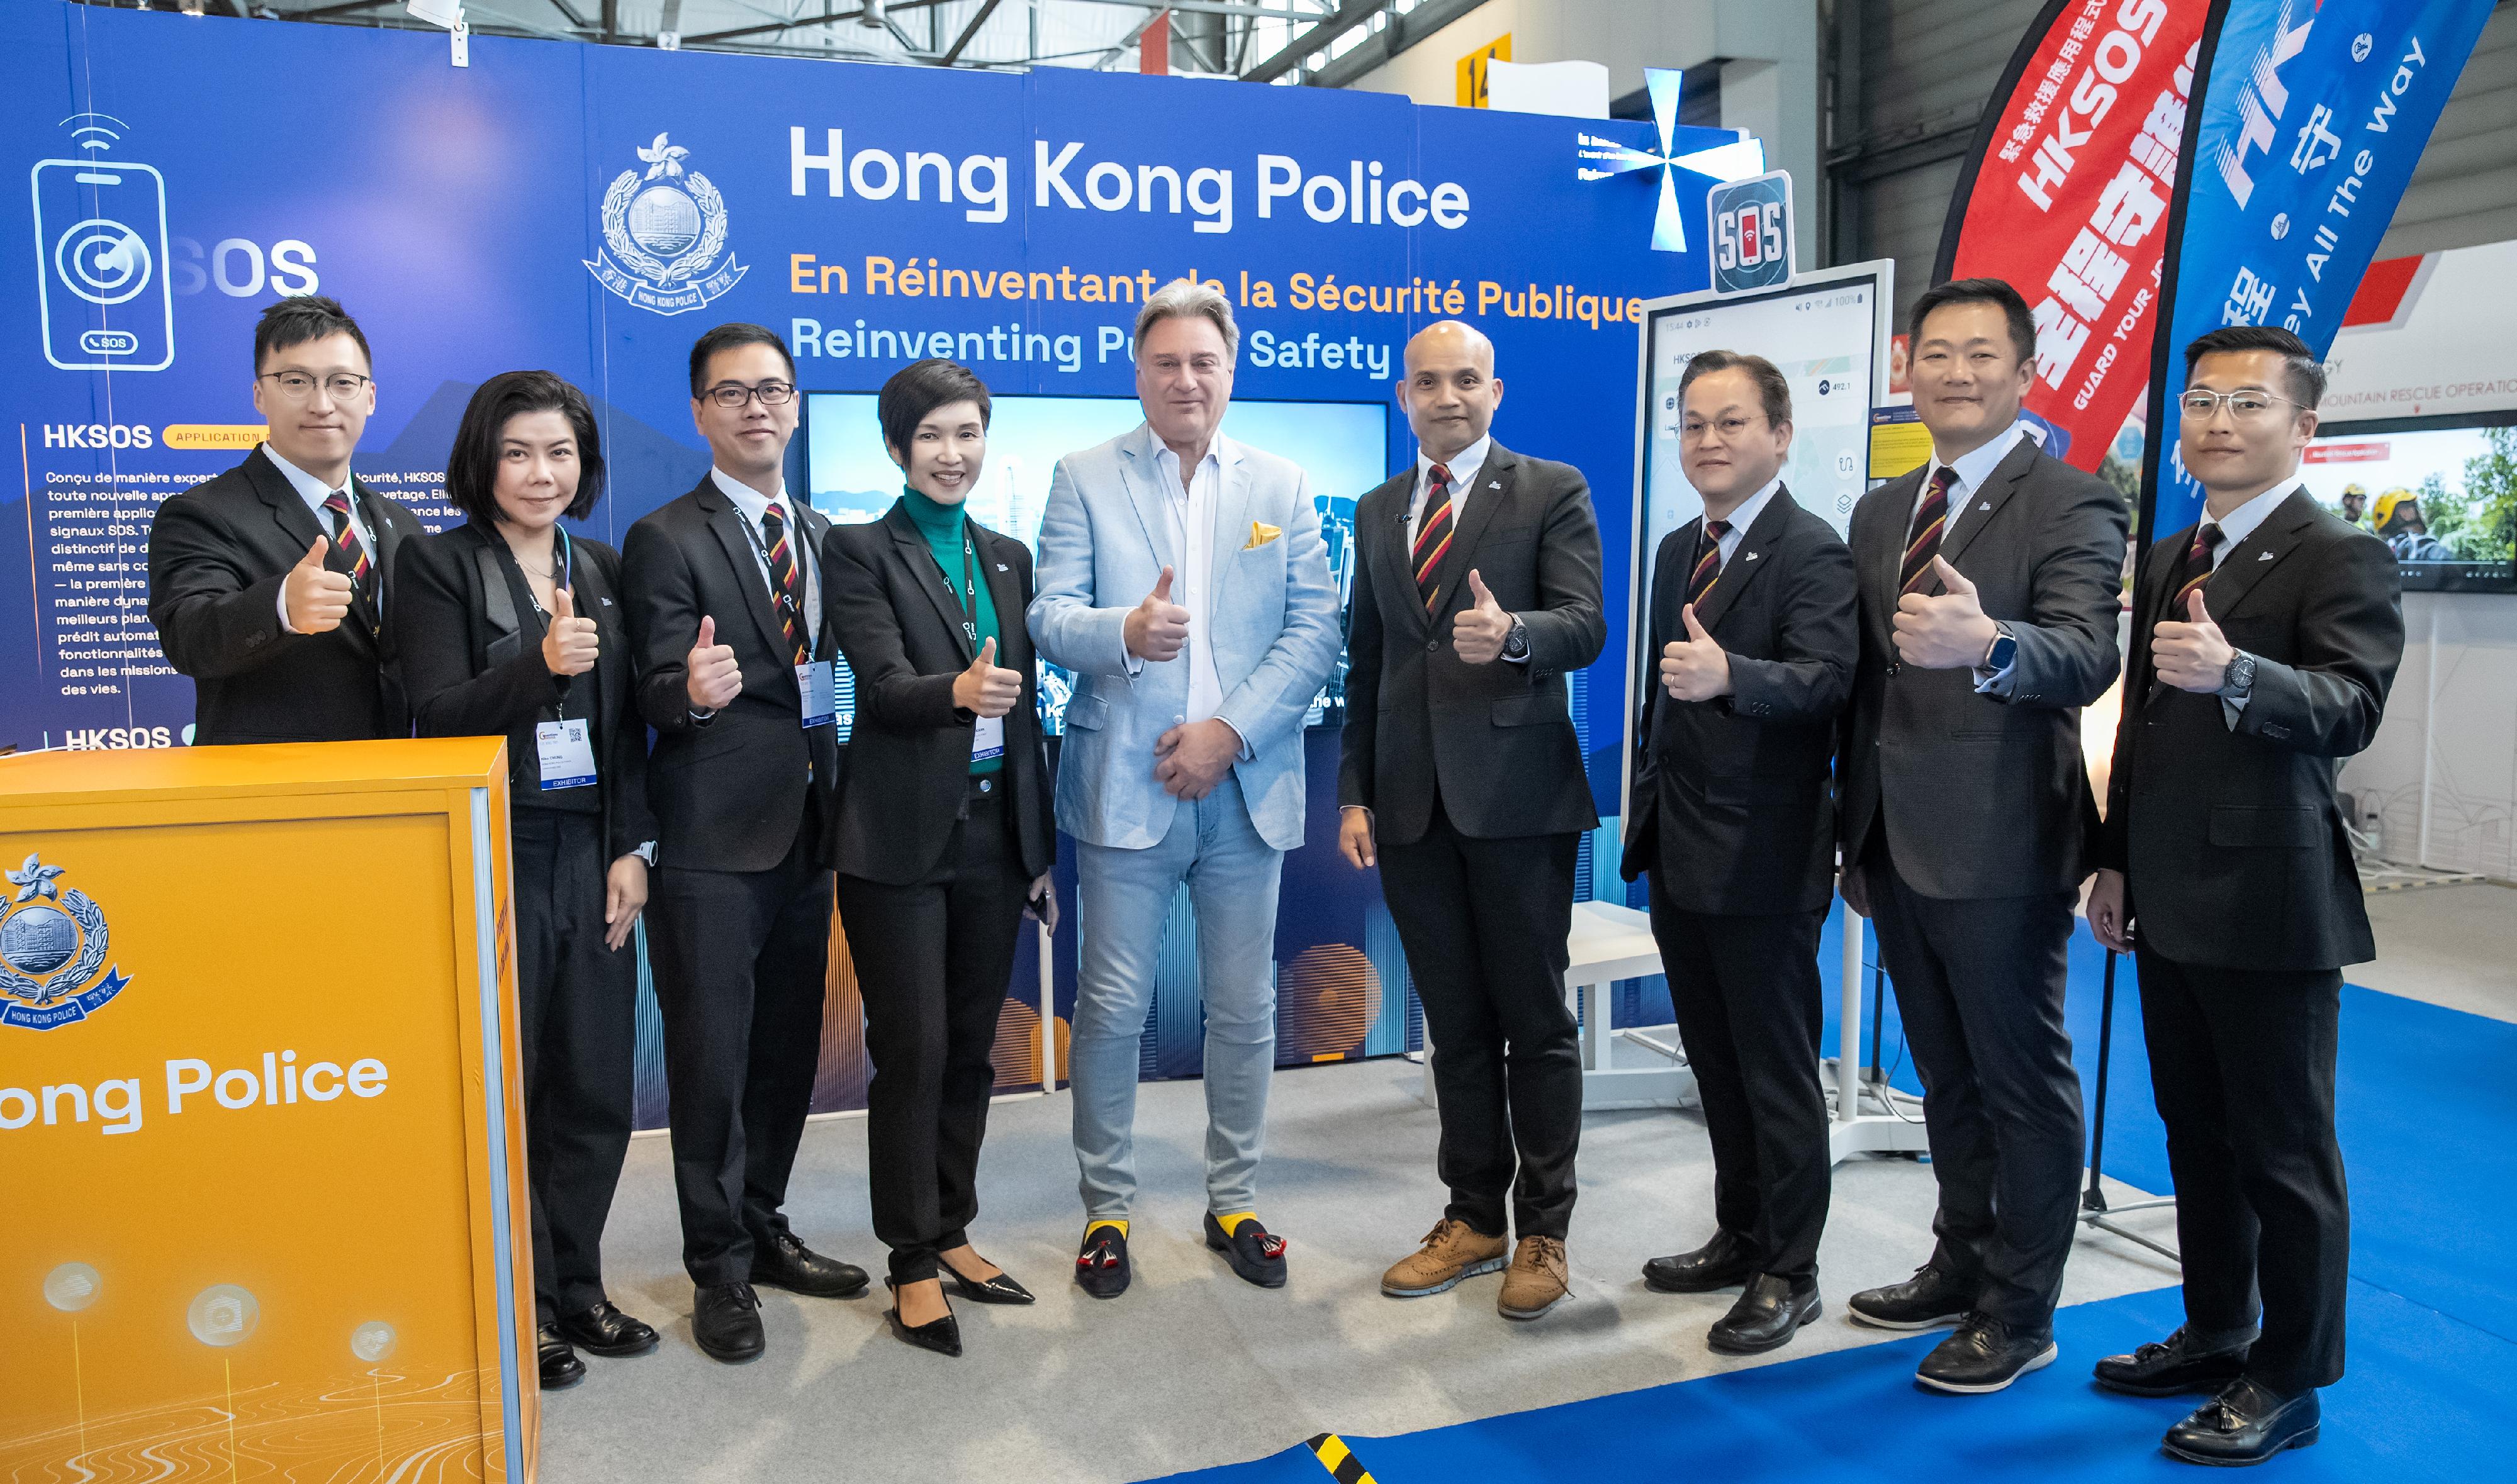 香港警務處資訊系統部人員四月十七日至二十一日在瑞士日內瓦參與第四十九屆日內瓦國際發明展。日內瓦國際發明展評判團主席David Taji（中）對香港警察技術項目的水平及創造力給予高度評價及肯定。